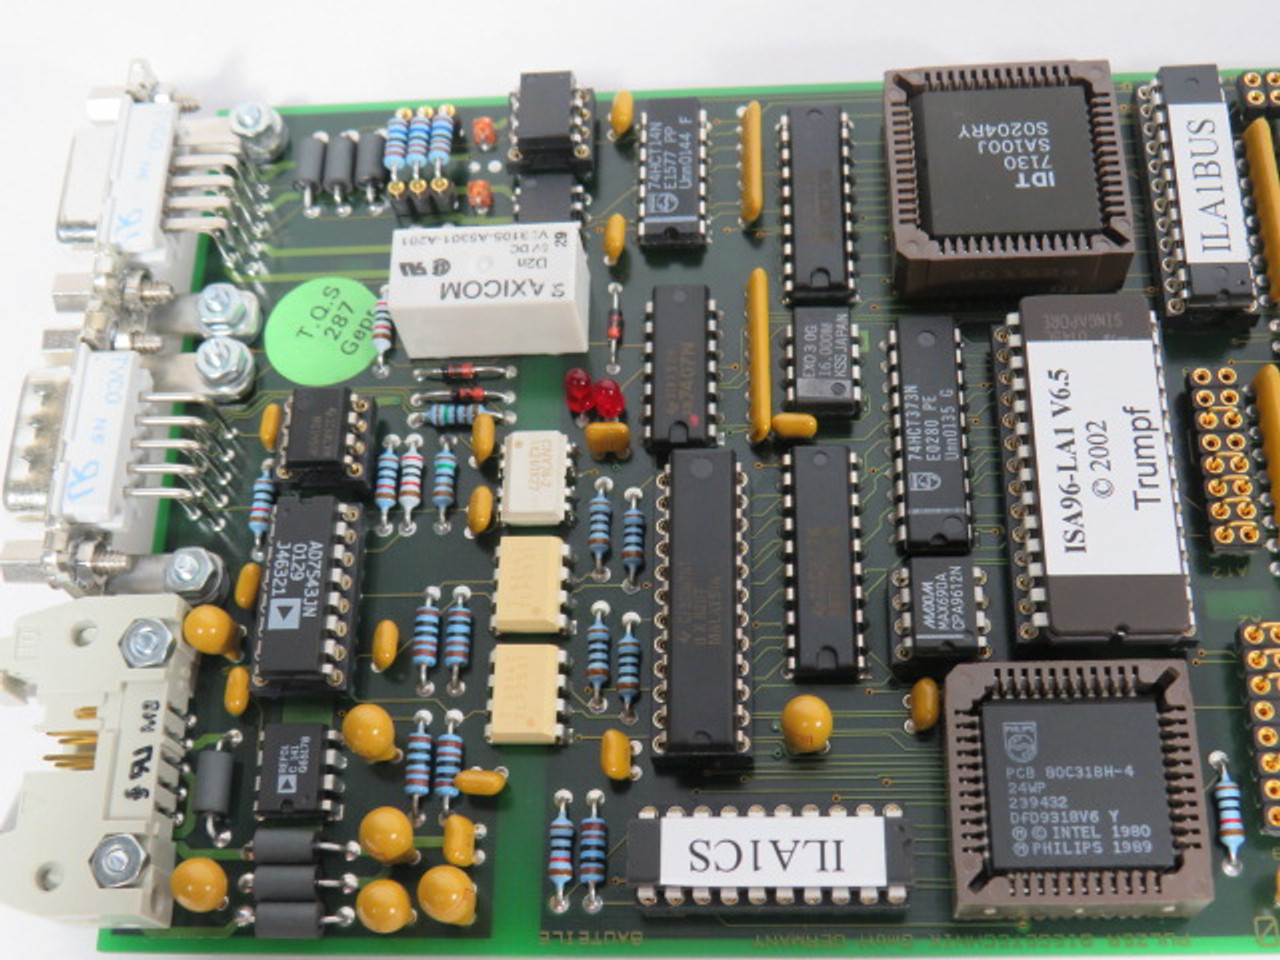 Pulzer Biegetechnik ISA96-LA1 V2.0 Memory & Control Circuit Board ! NOS !